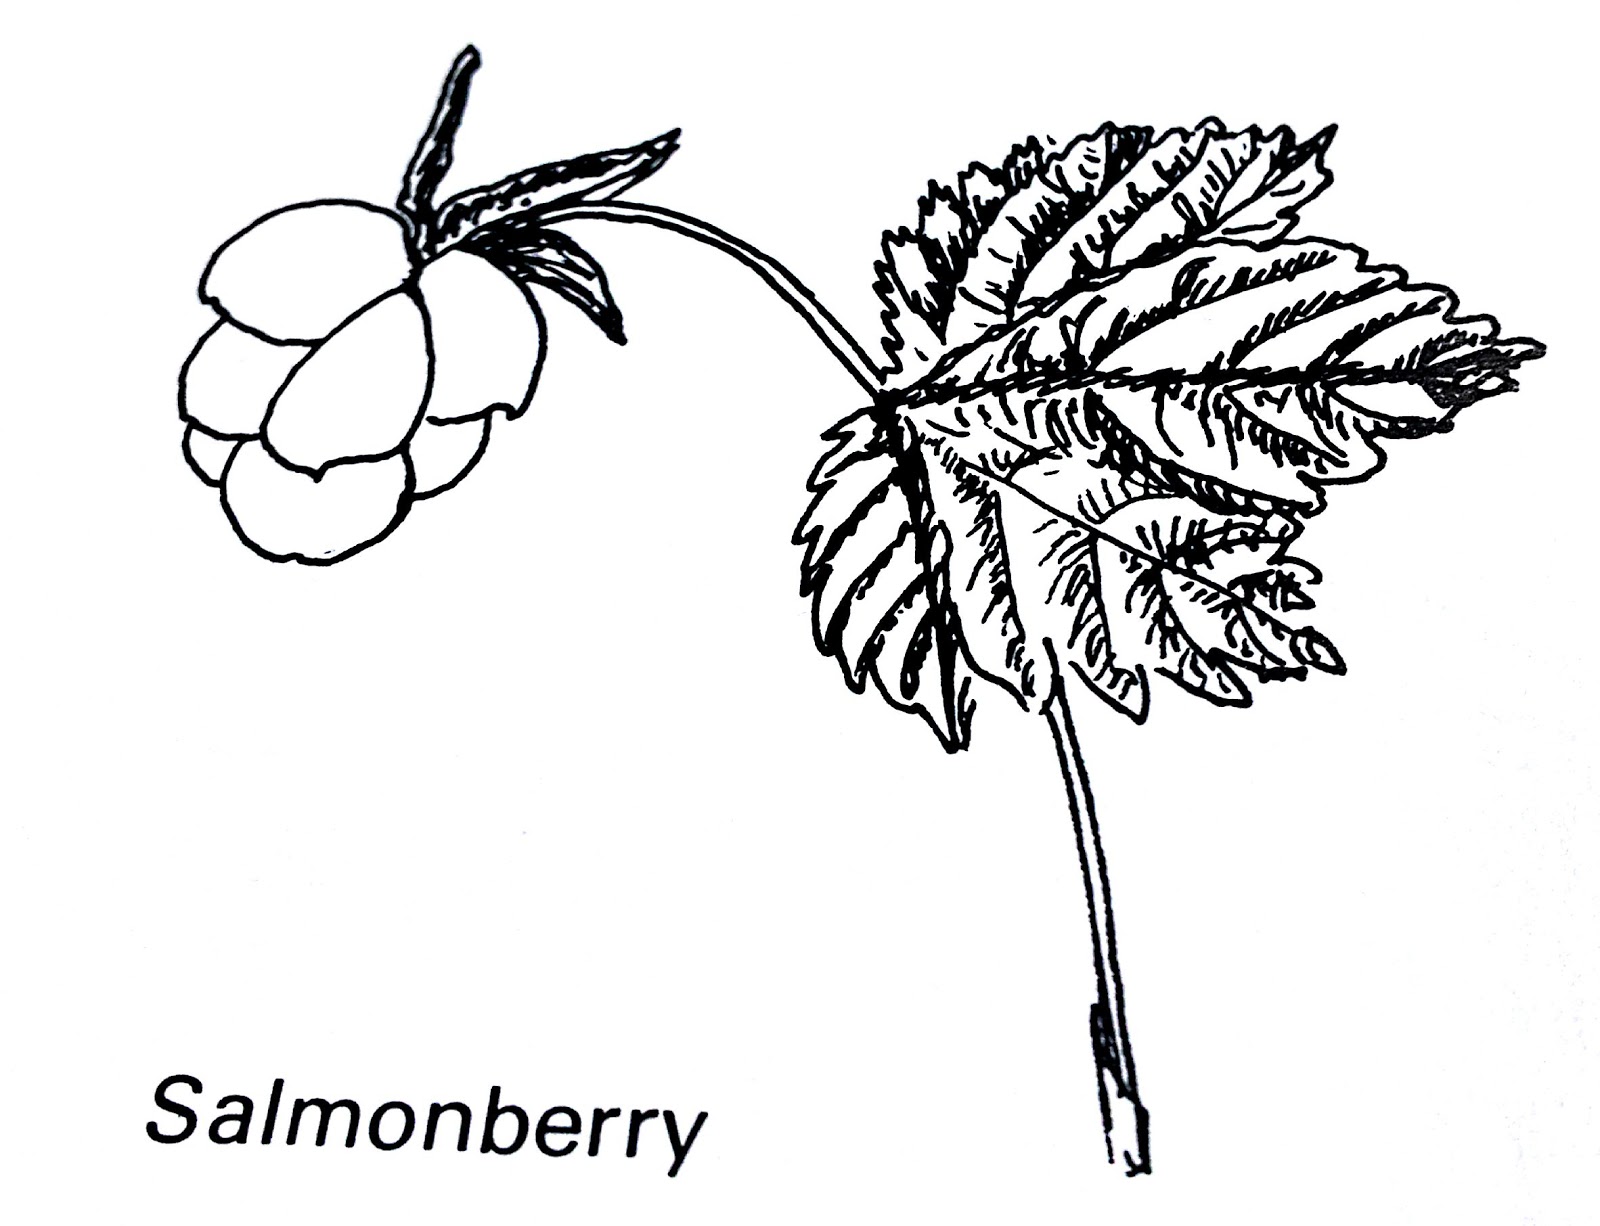 Salmonberry: Food, Medicine, Culture – Part 1